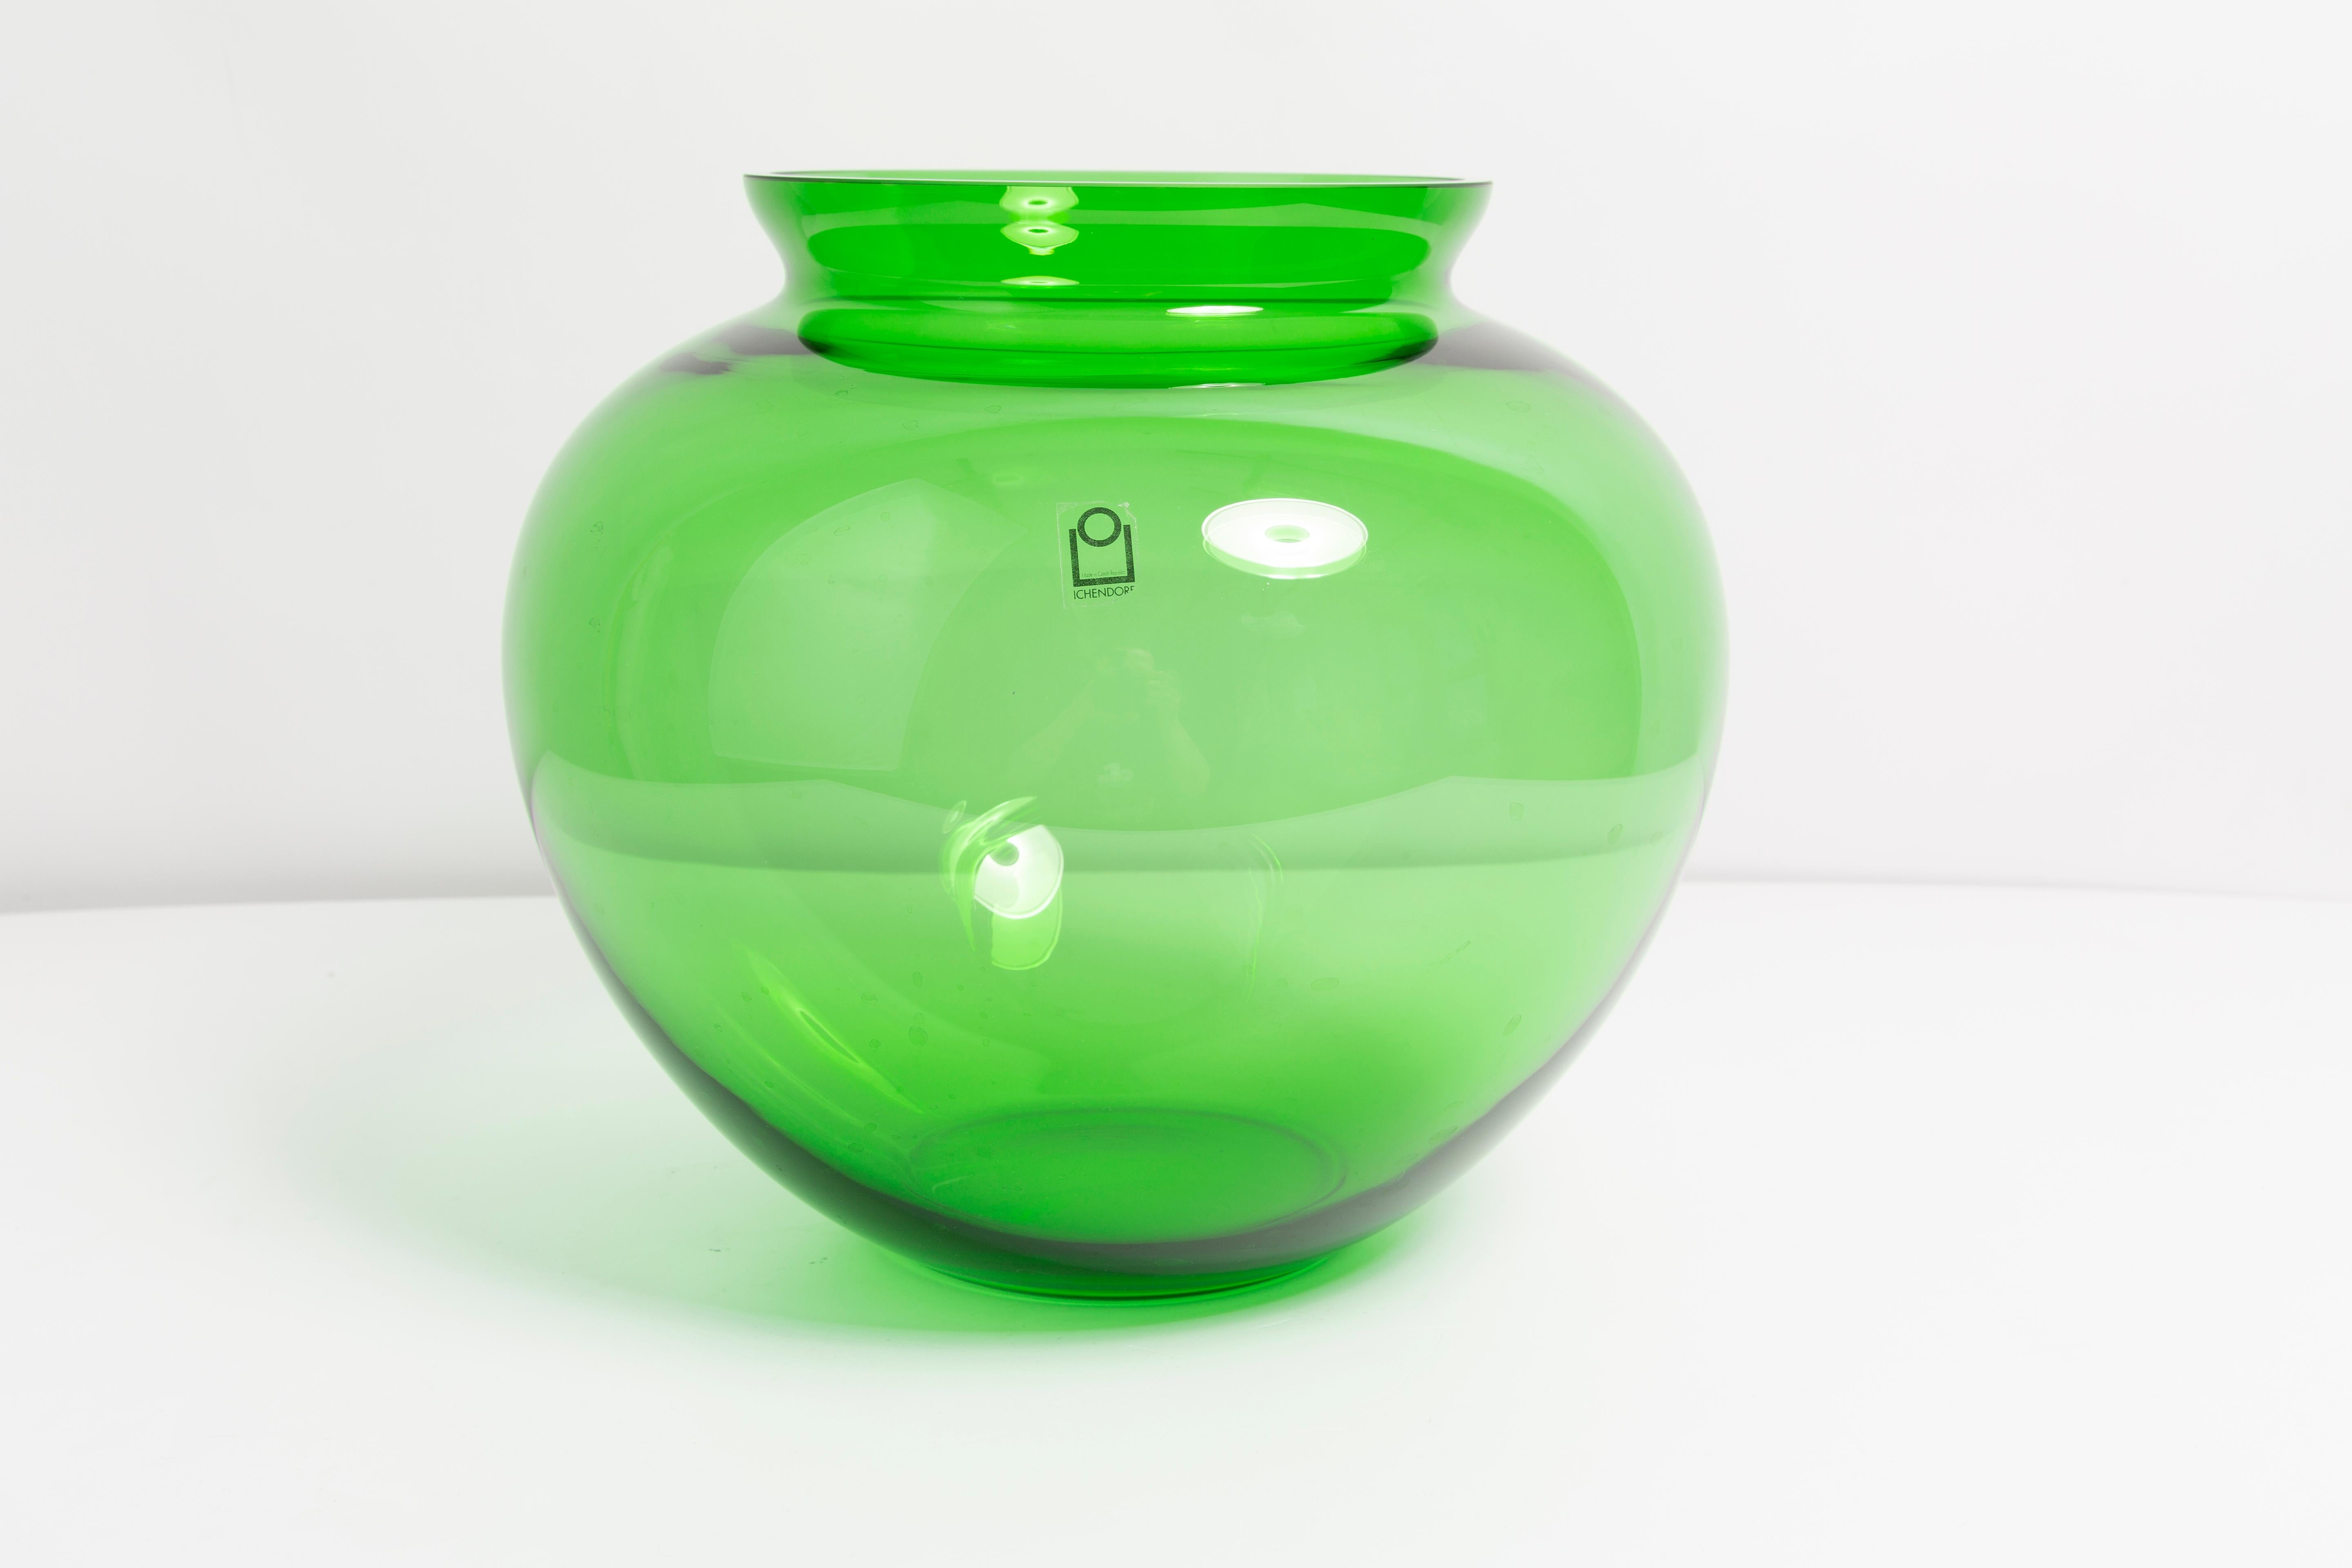 Vase vert en très bon état. Produit dans les années 1960.
Verre en parfait état. Le vase semble avoir été sorti de sa boîte.

Pas d'accrocs, de défauts, etc. La surface extérieure en relief, l'intérieur lisse. Vase en verre épais, massif.

 Une